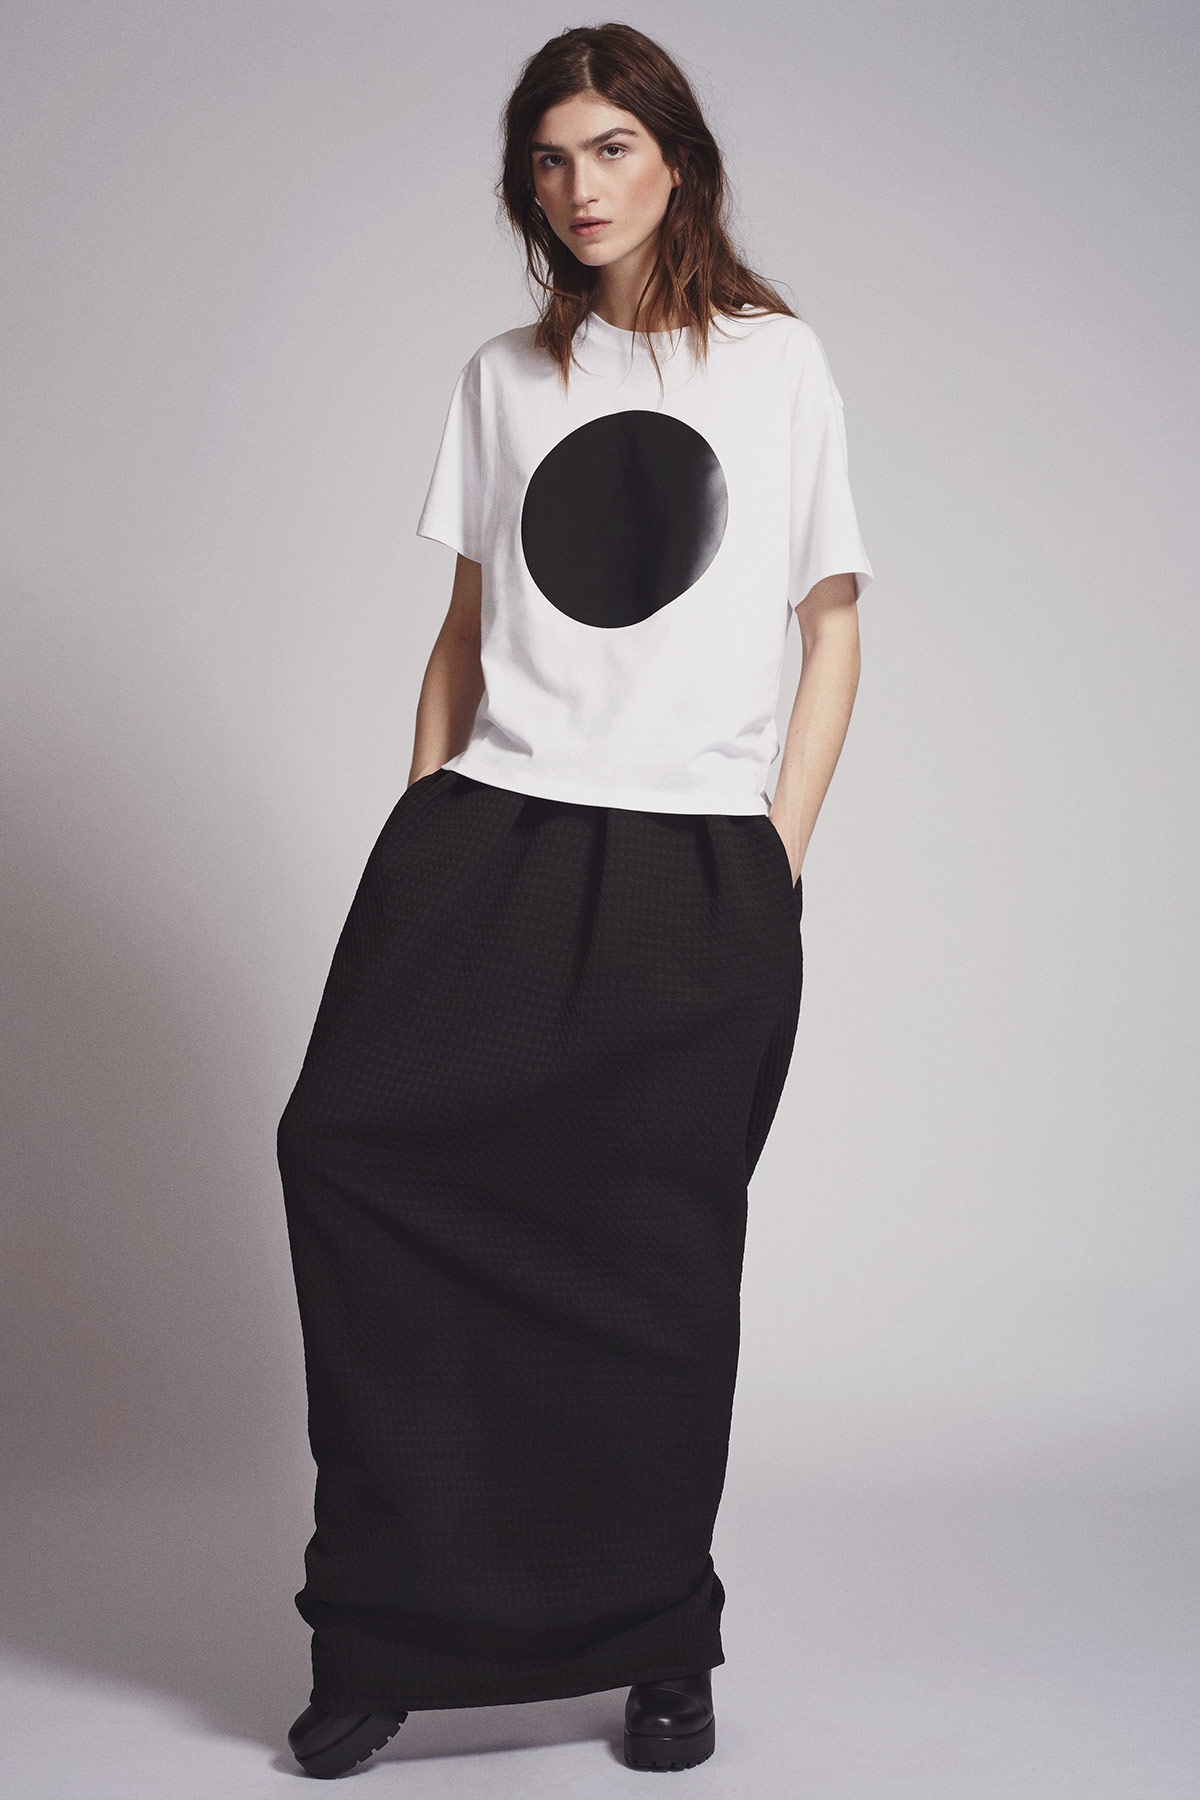 eclipse-t-shirt-maxi-wing-skirt.jpg